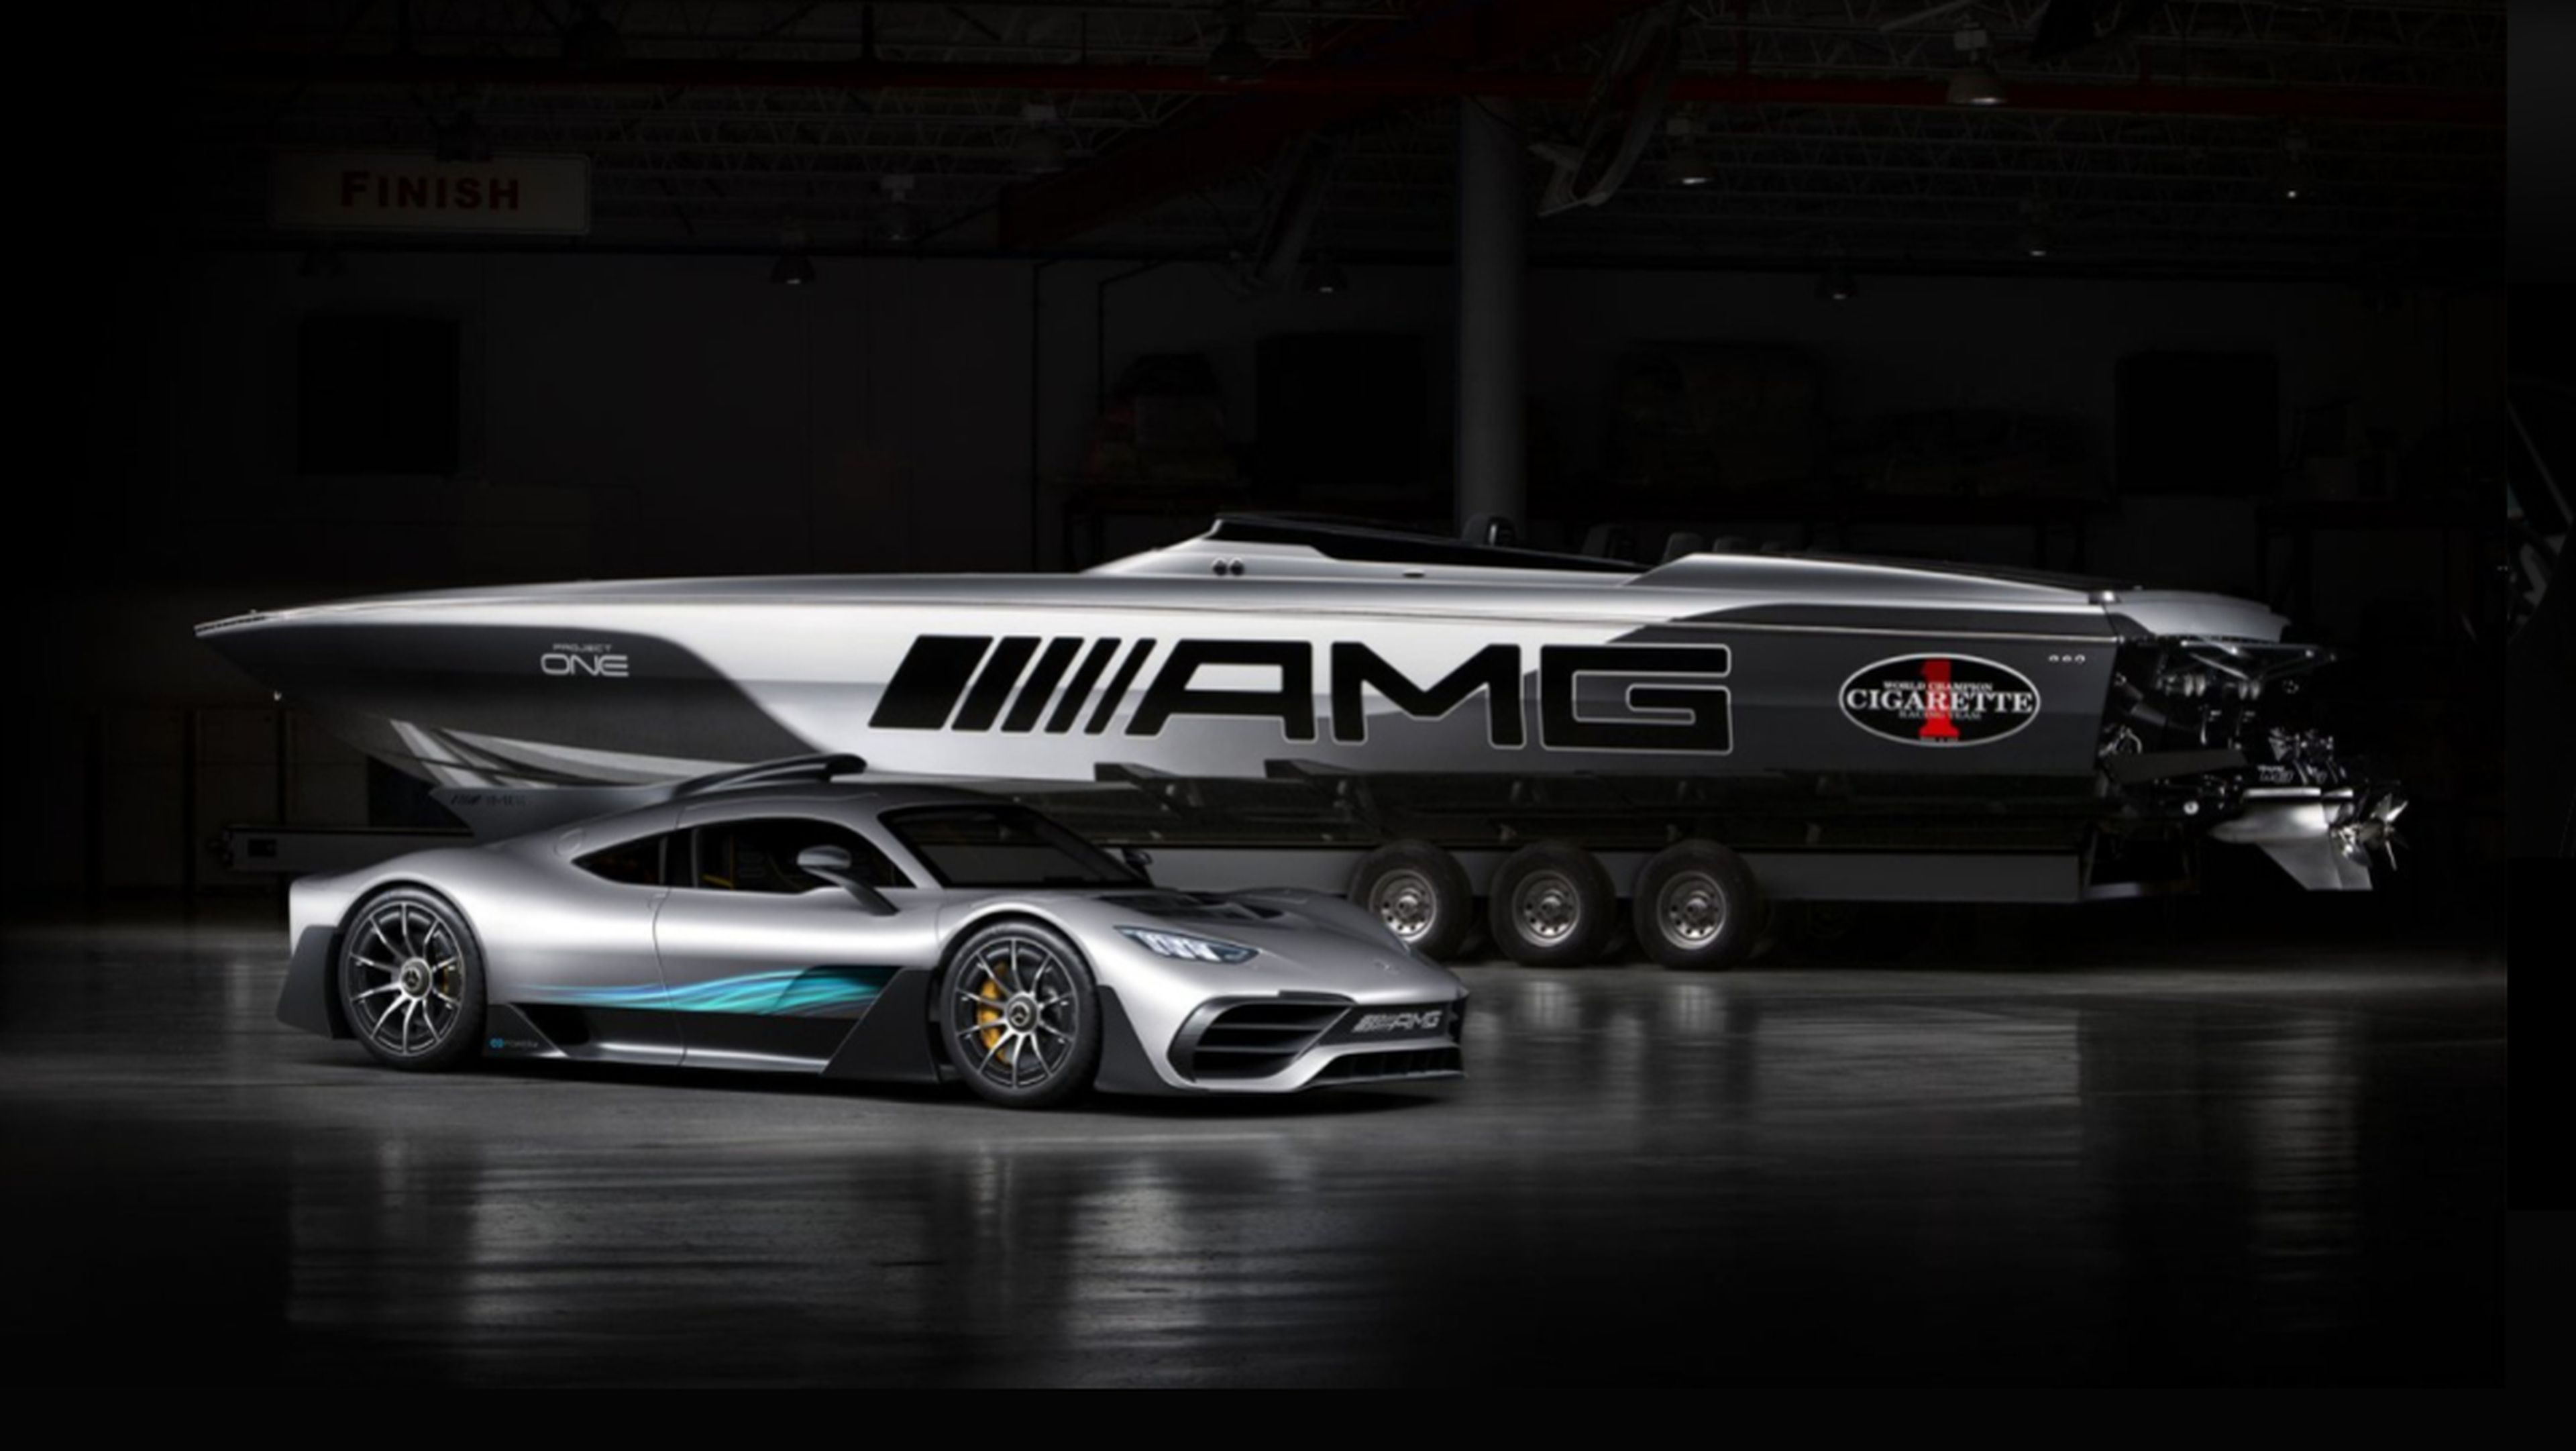 Cigarette Racing 515 Project One Mercedes AMG y su 'utilitario'